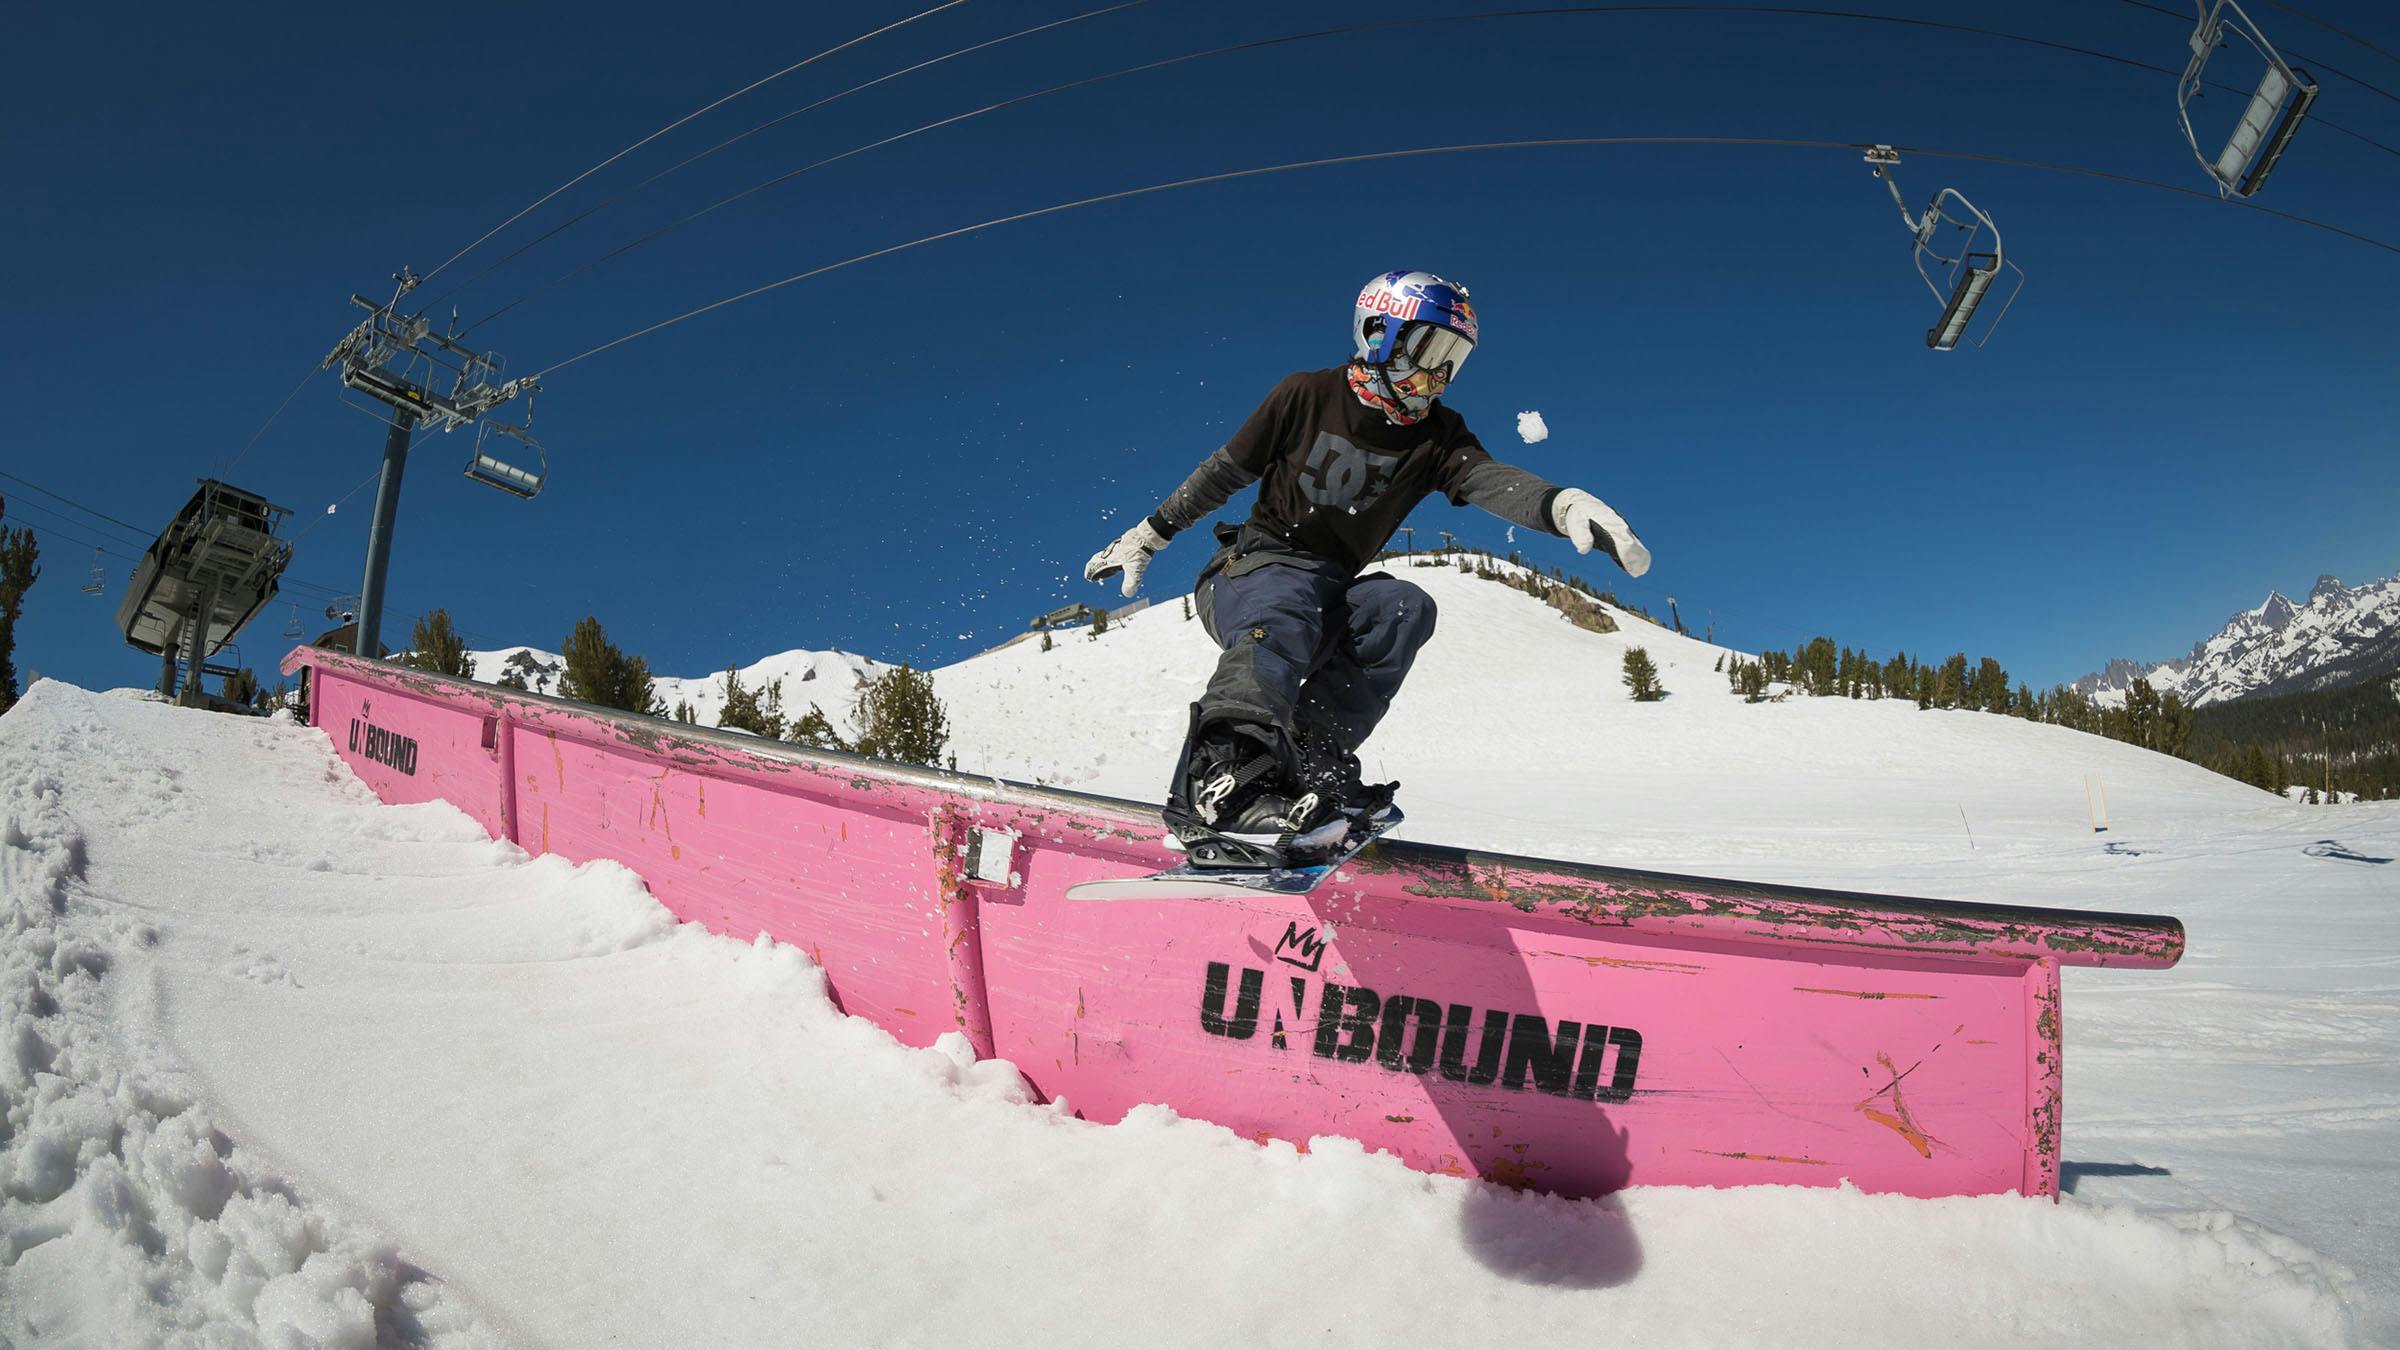 Snowboarder in Unbound Terrain Park